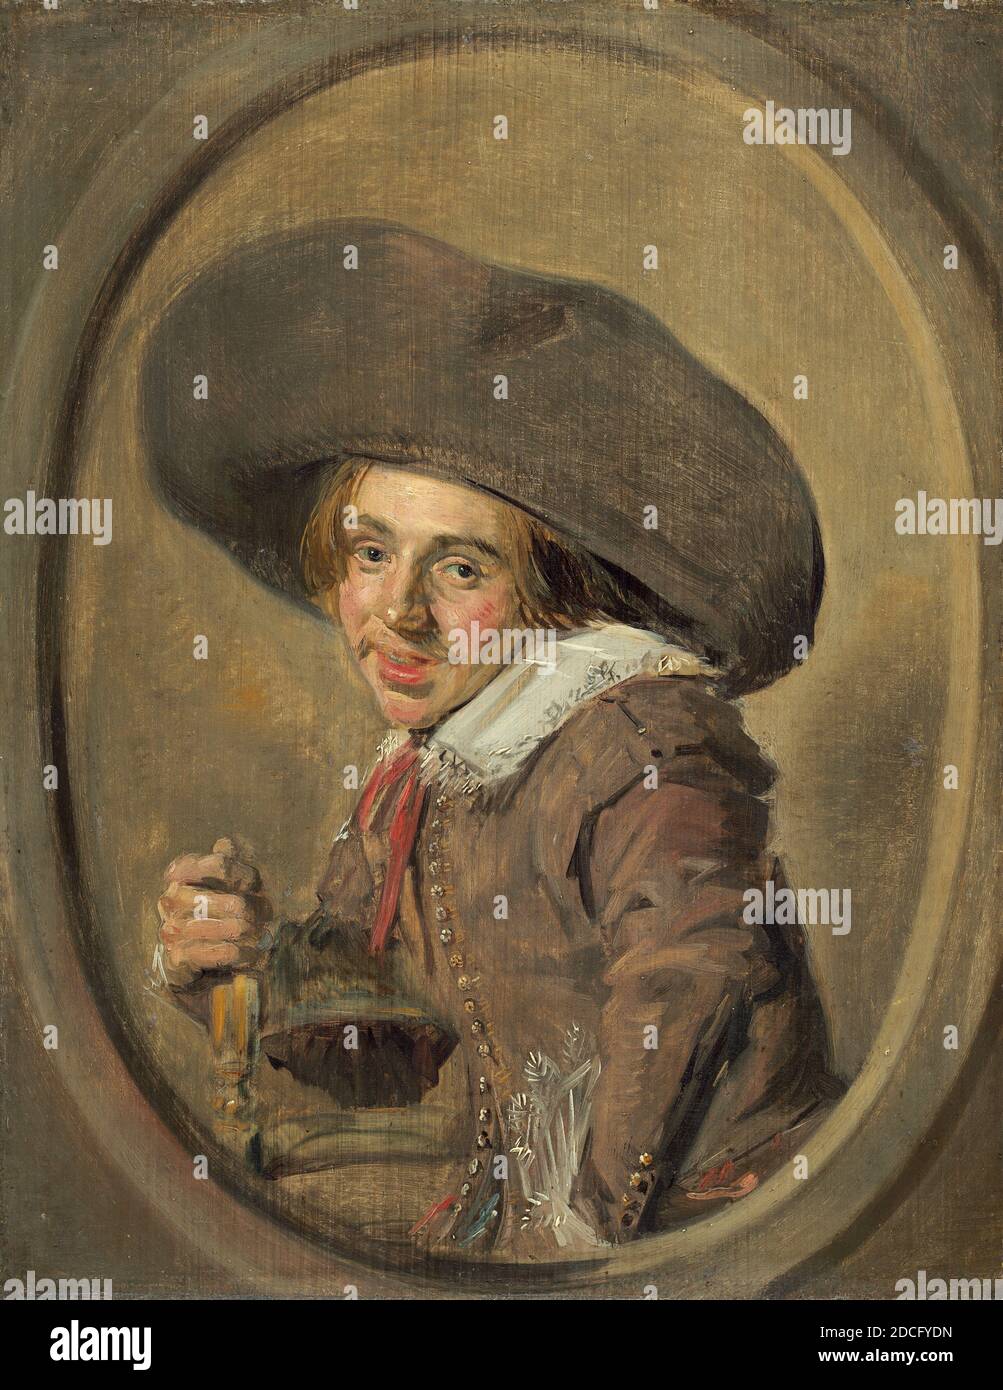 1626 1629 Banque de photographies et d'images à haute résolution - Alamy